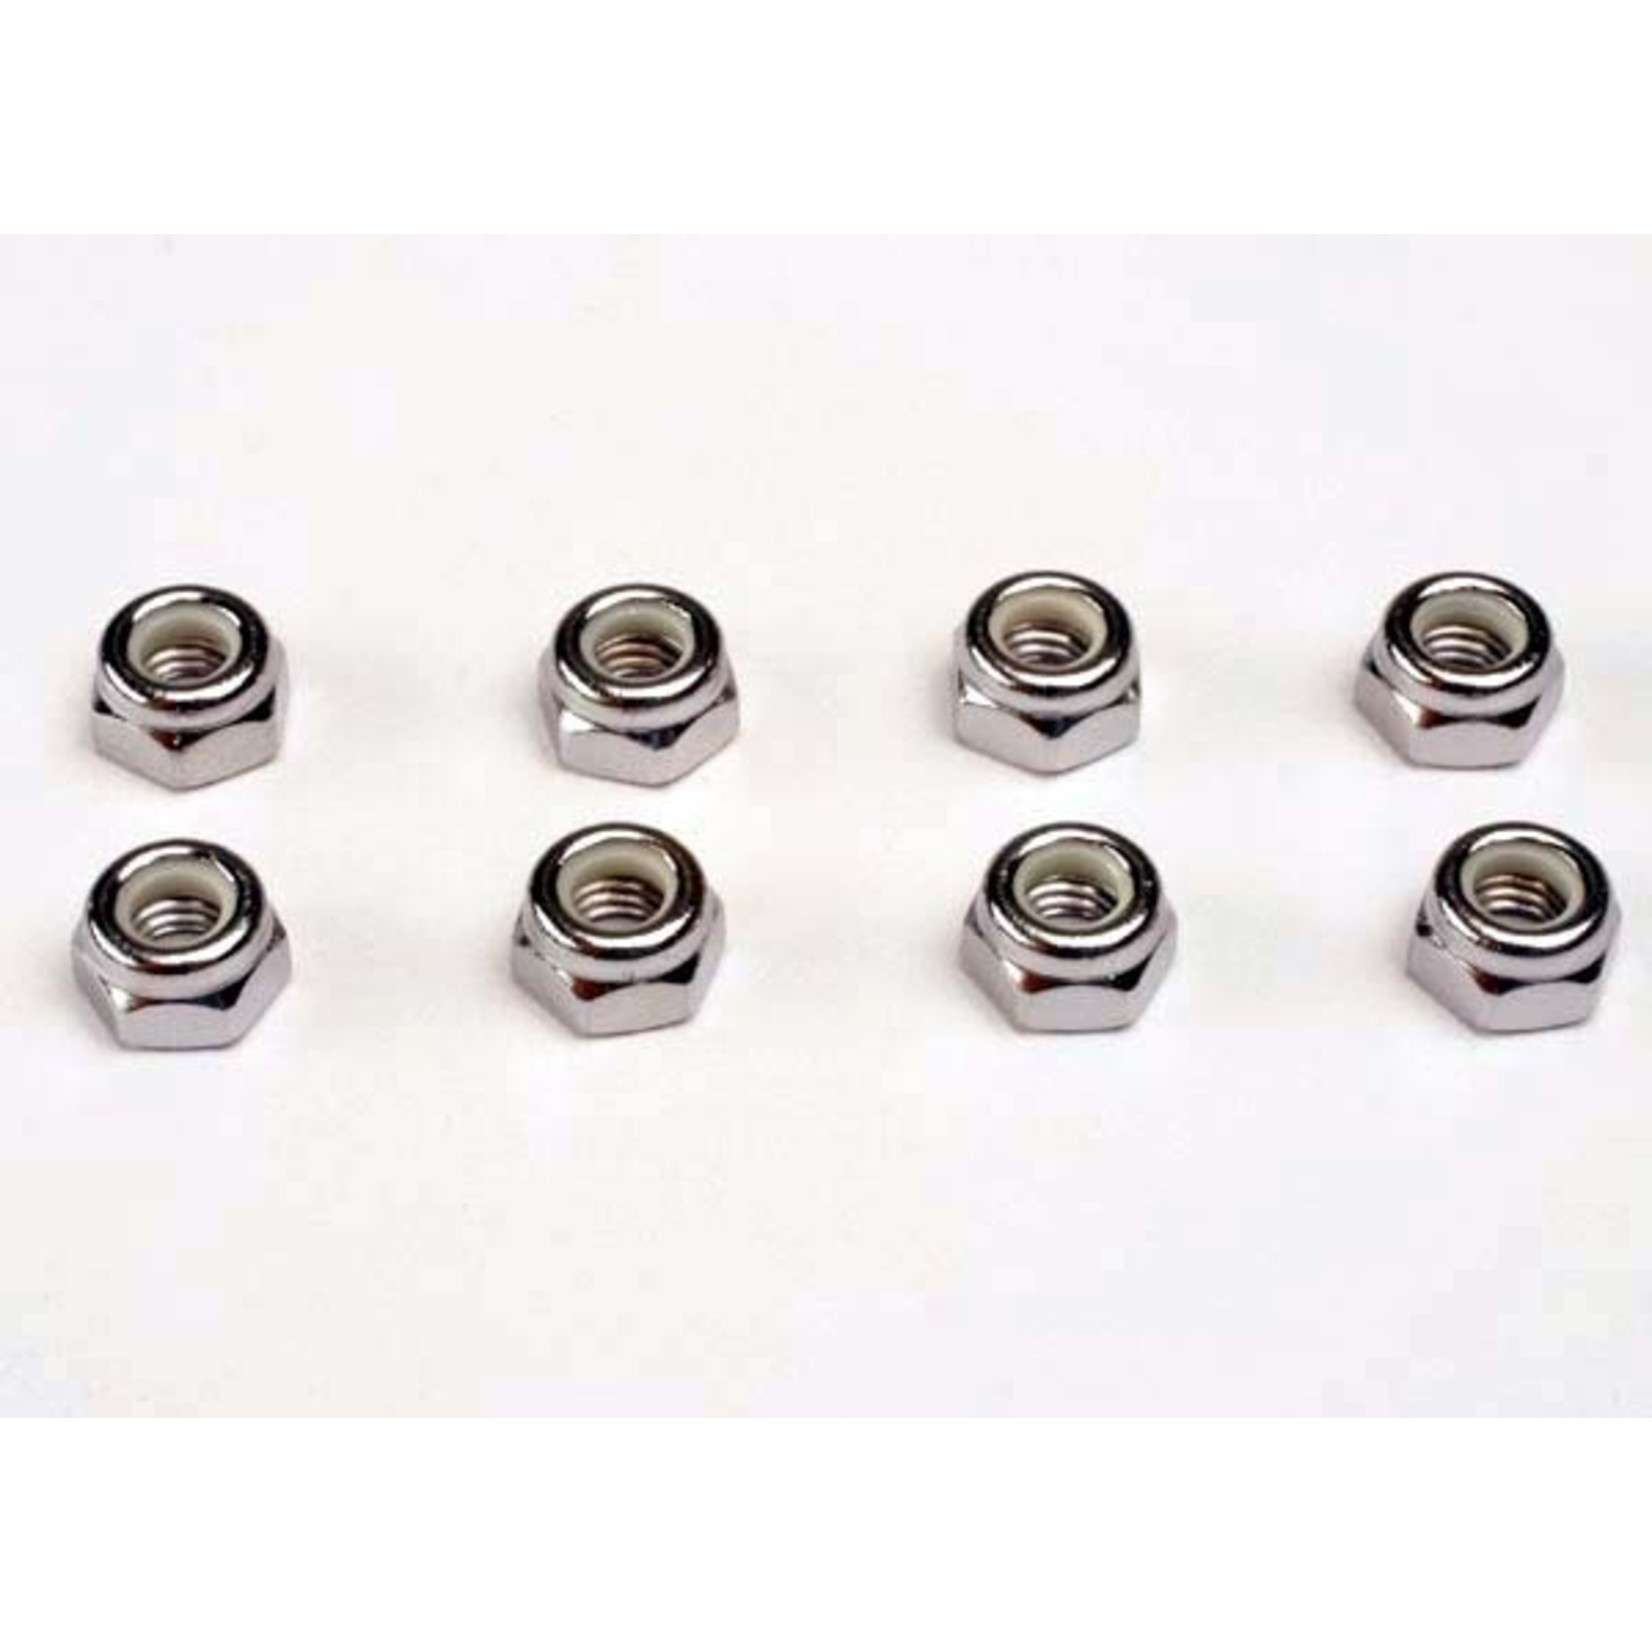 Traxxas 4147 - Wheel nuts, 5mm nylon locking (8)